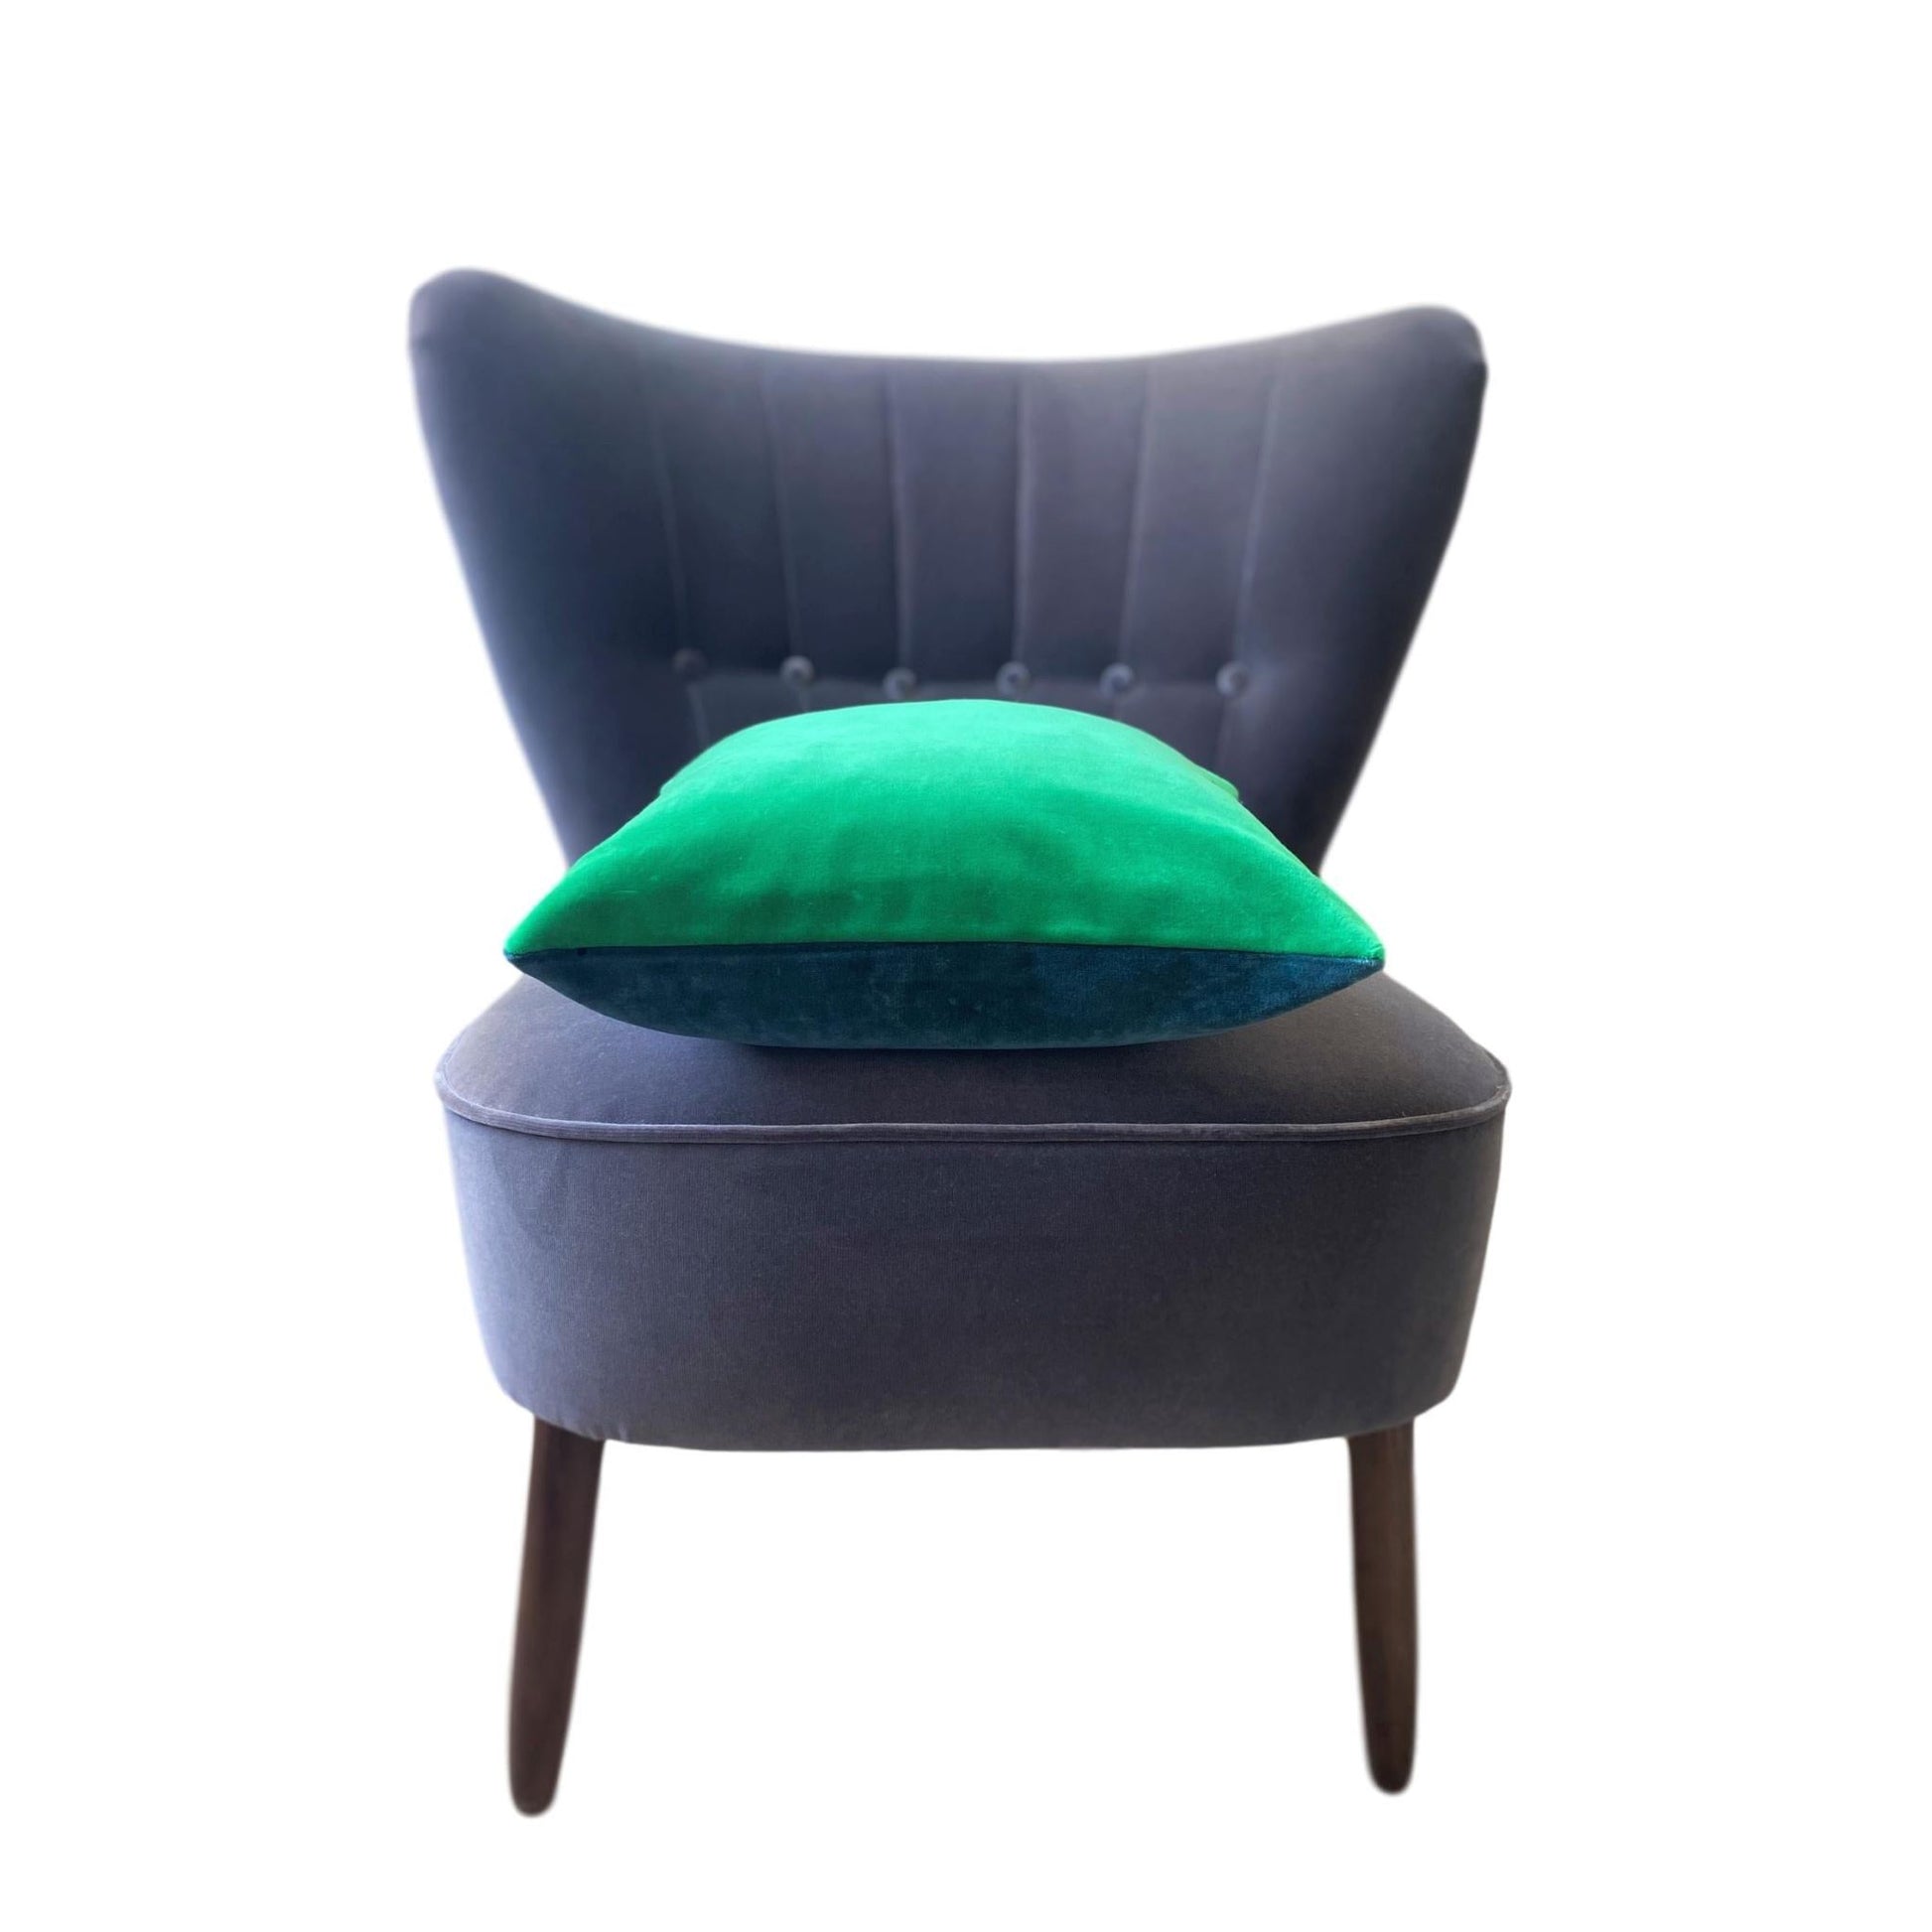 dark green velvet cushion luxe 39